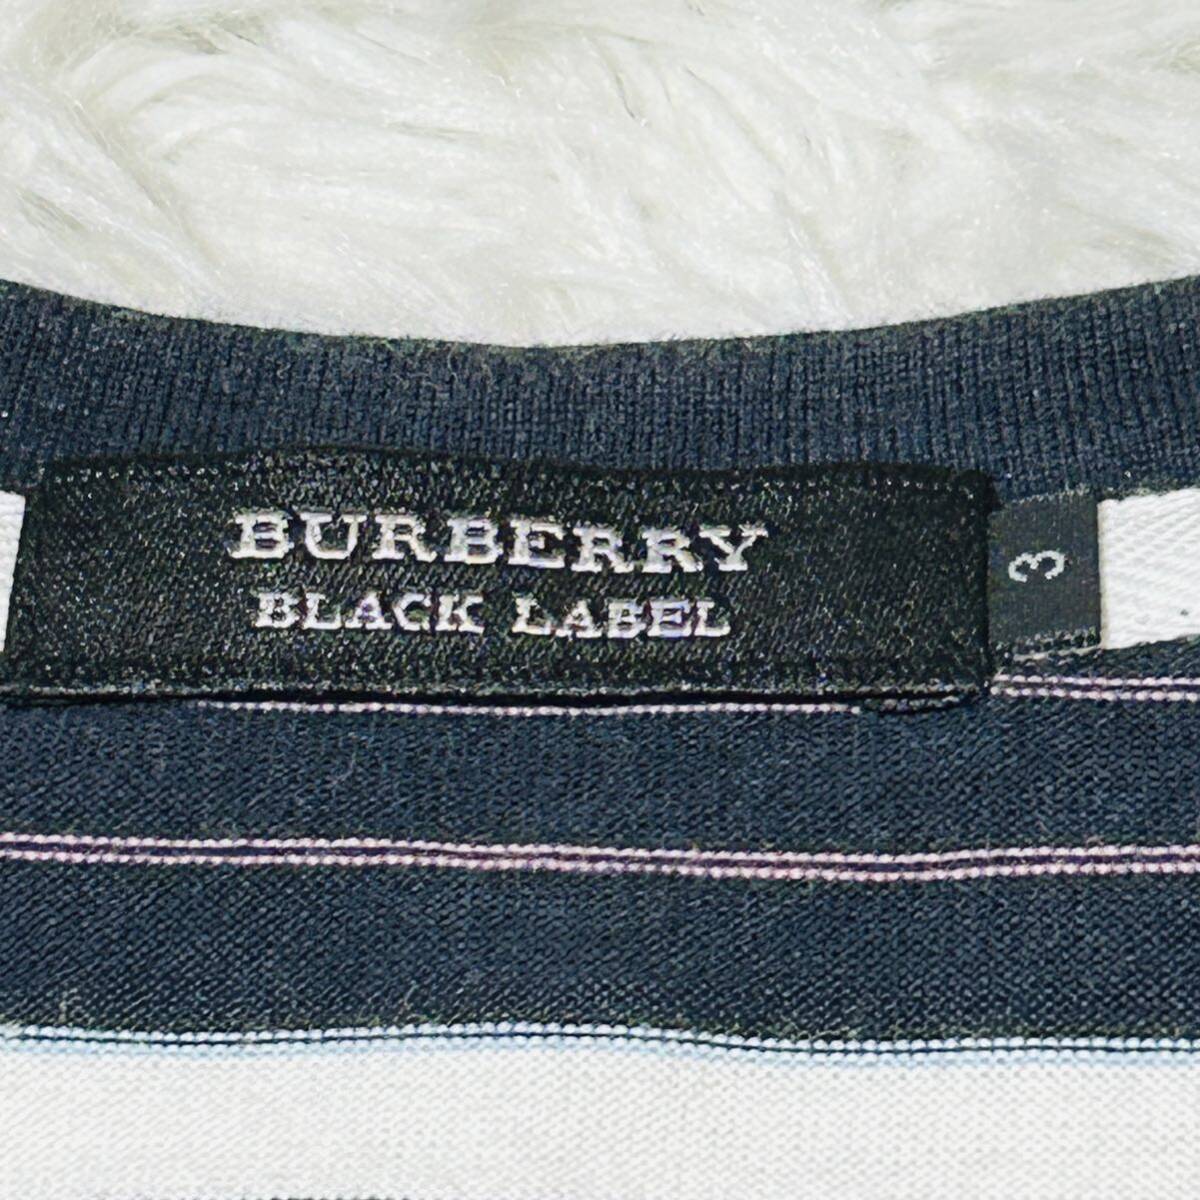  превосходный товар * размер 3(L)* Burberry Black Label BURBERRY BLACK LABEL футболка короткий рукав шланг Logo вышивка V шея окантовка темно-синий серия сделано в Японии 